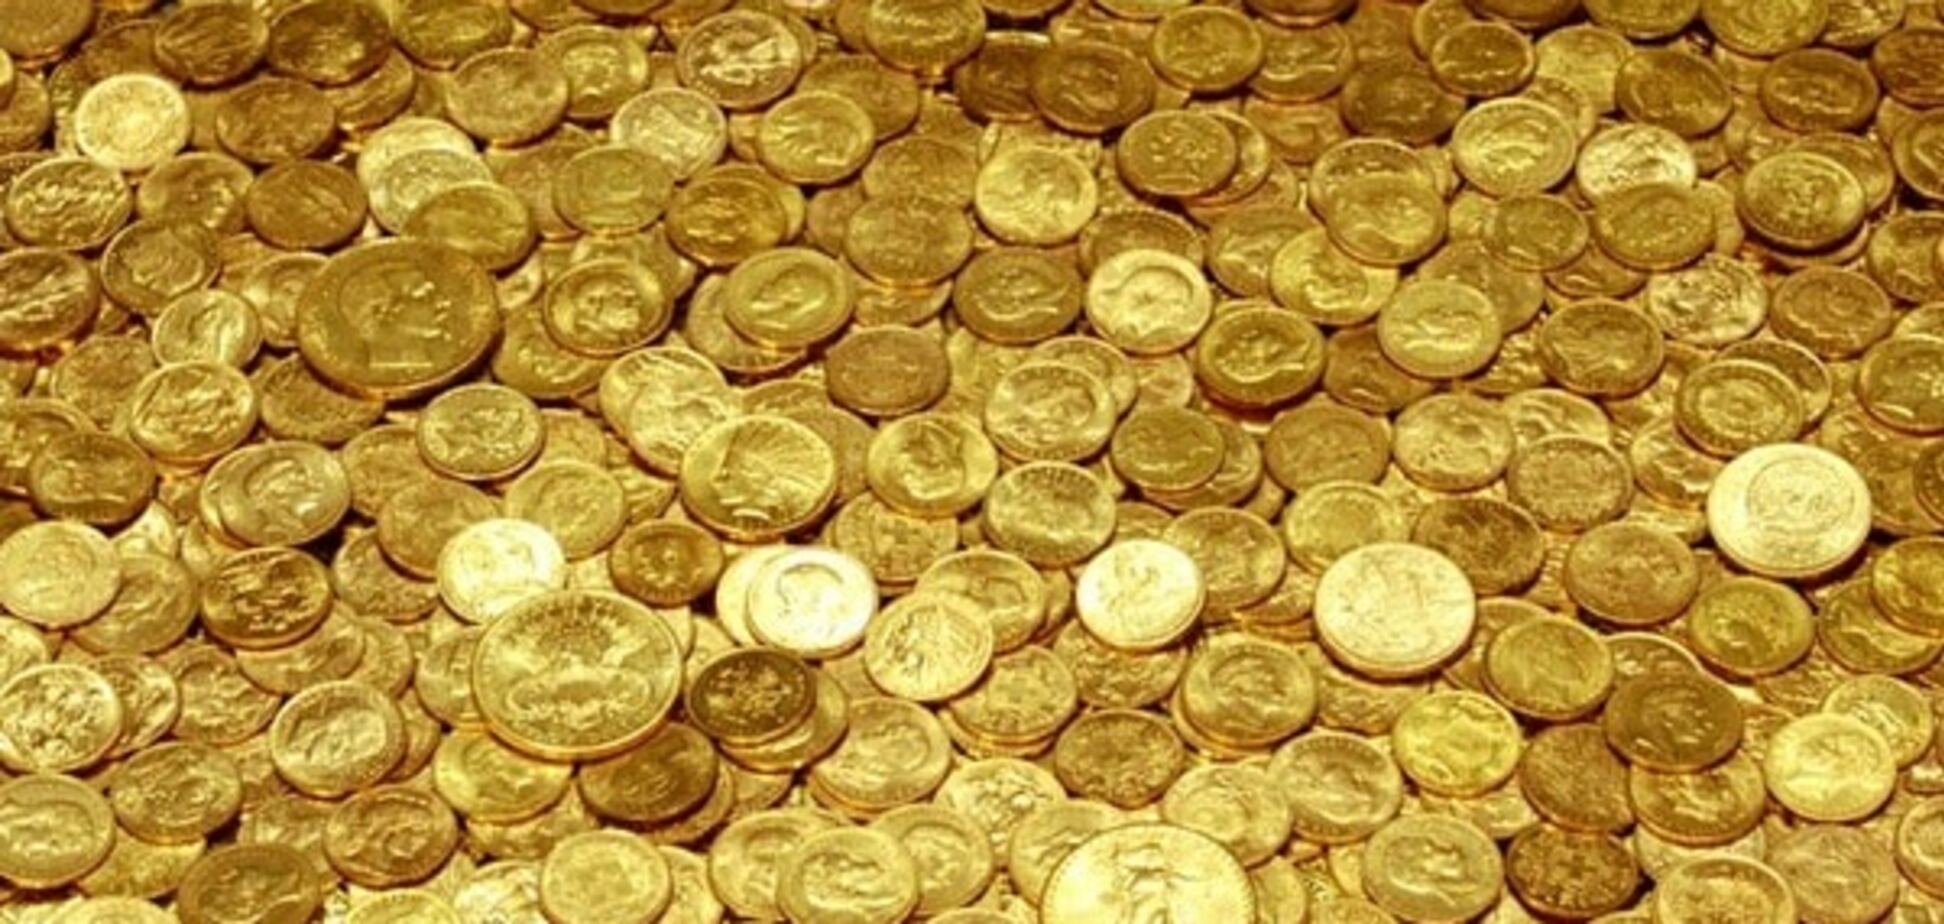 Для борьбы с кризисом: в России отчеканят золотые монеты по 5 кг